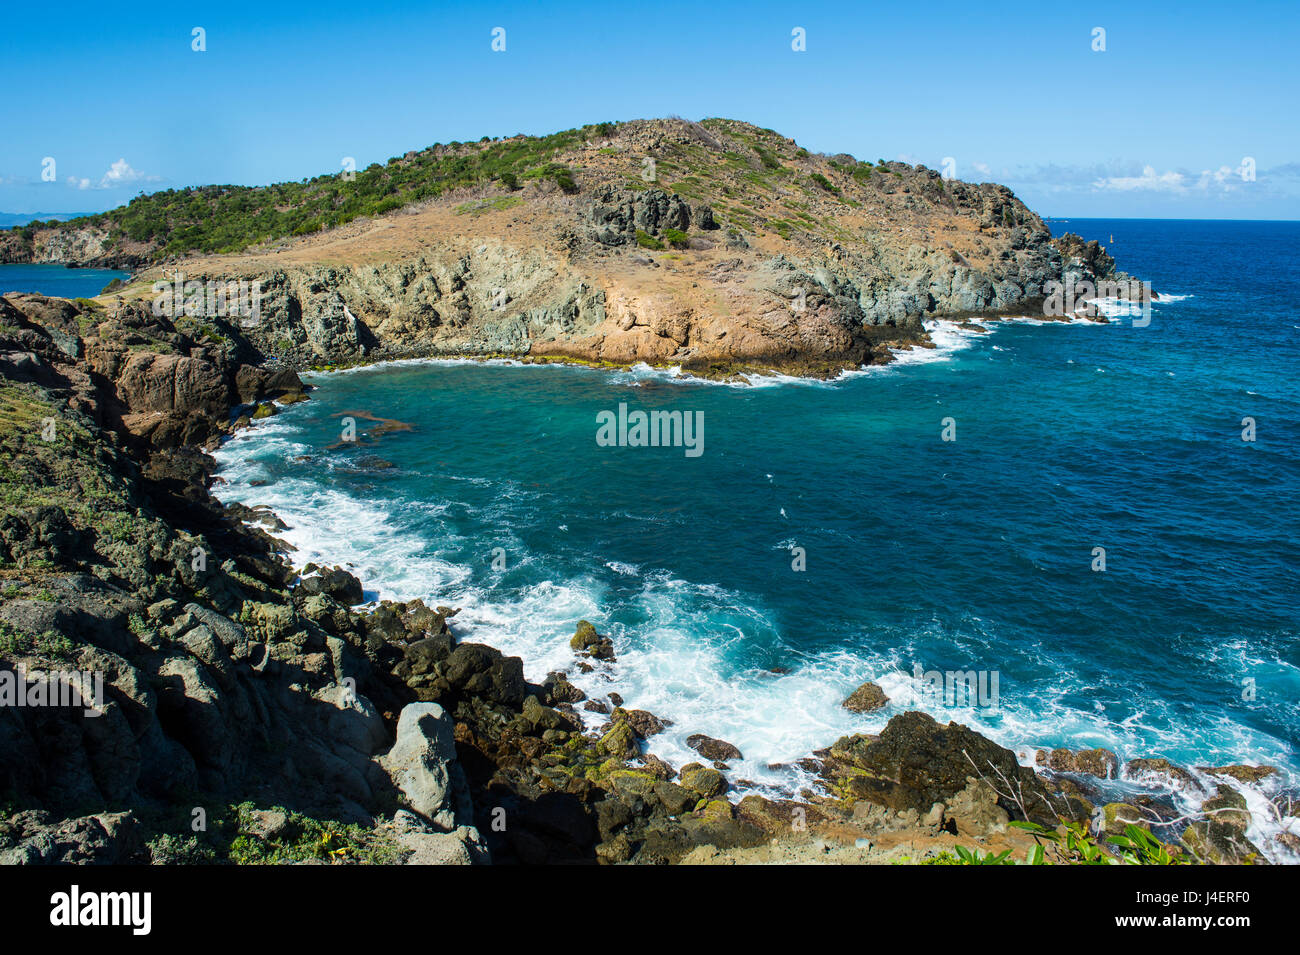 Vue sur la côte de St Barth (Saint Barthelemy), Petites Antilles, Antilles, Caraïbes, Amérique Centrale Banque D'Images